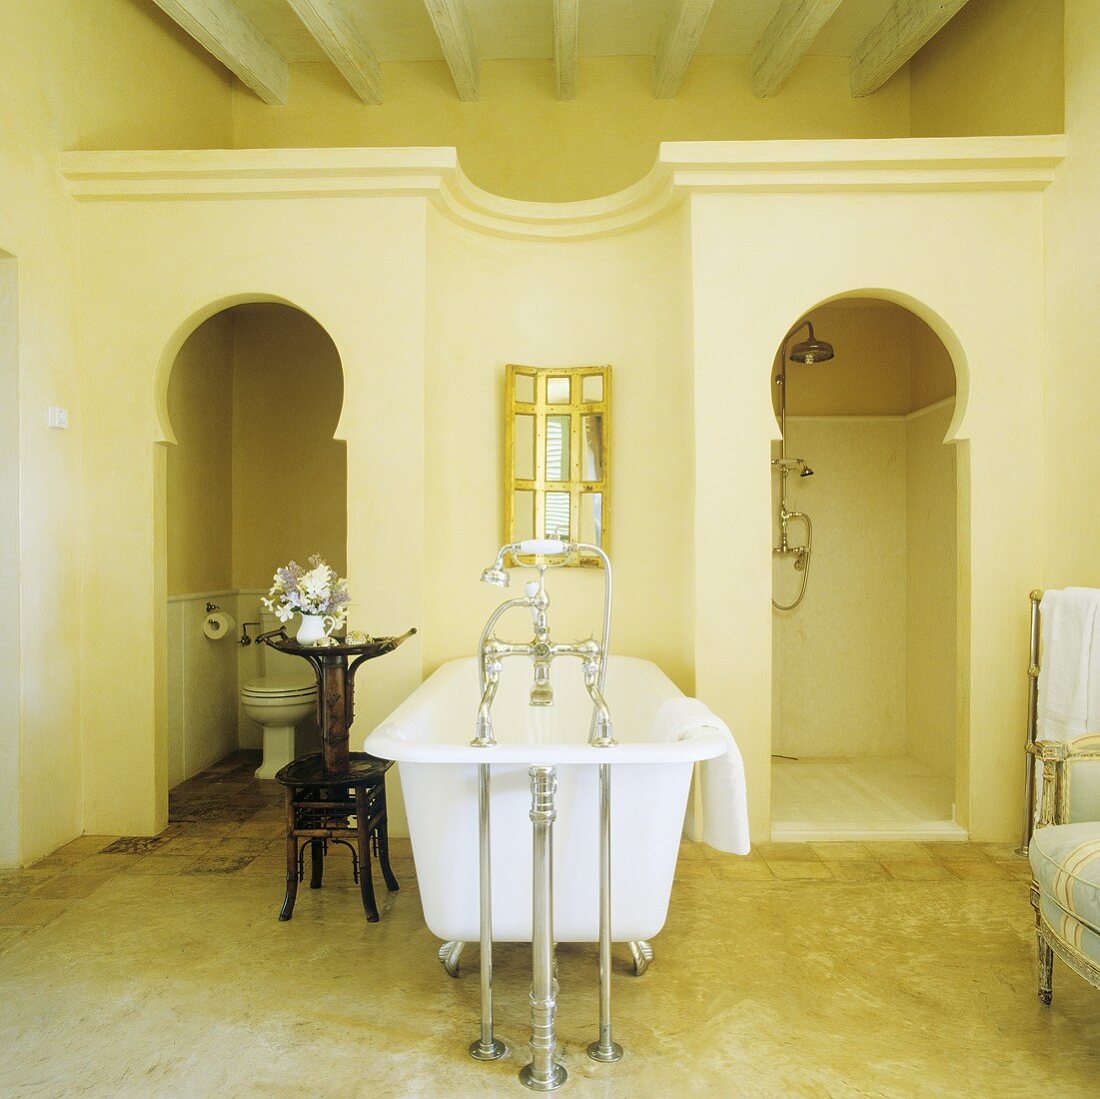 Mediterraner Bad - antike Badewanne mit Standarmatur und Einbau für WC und Dusche mit orientalisch geformter Türöffnung